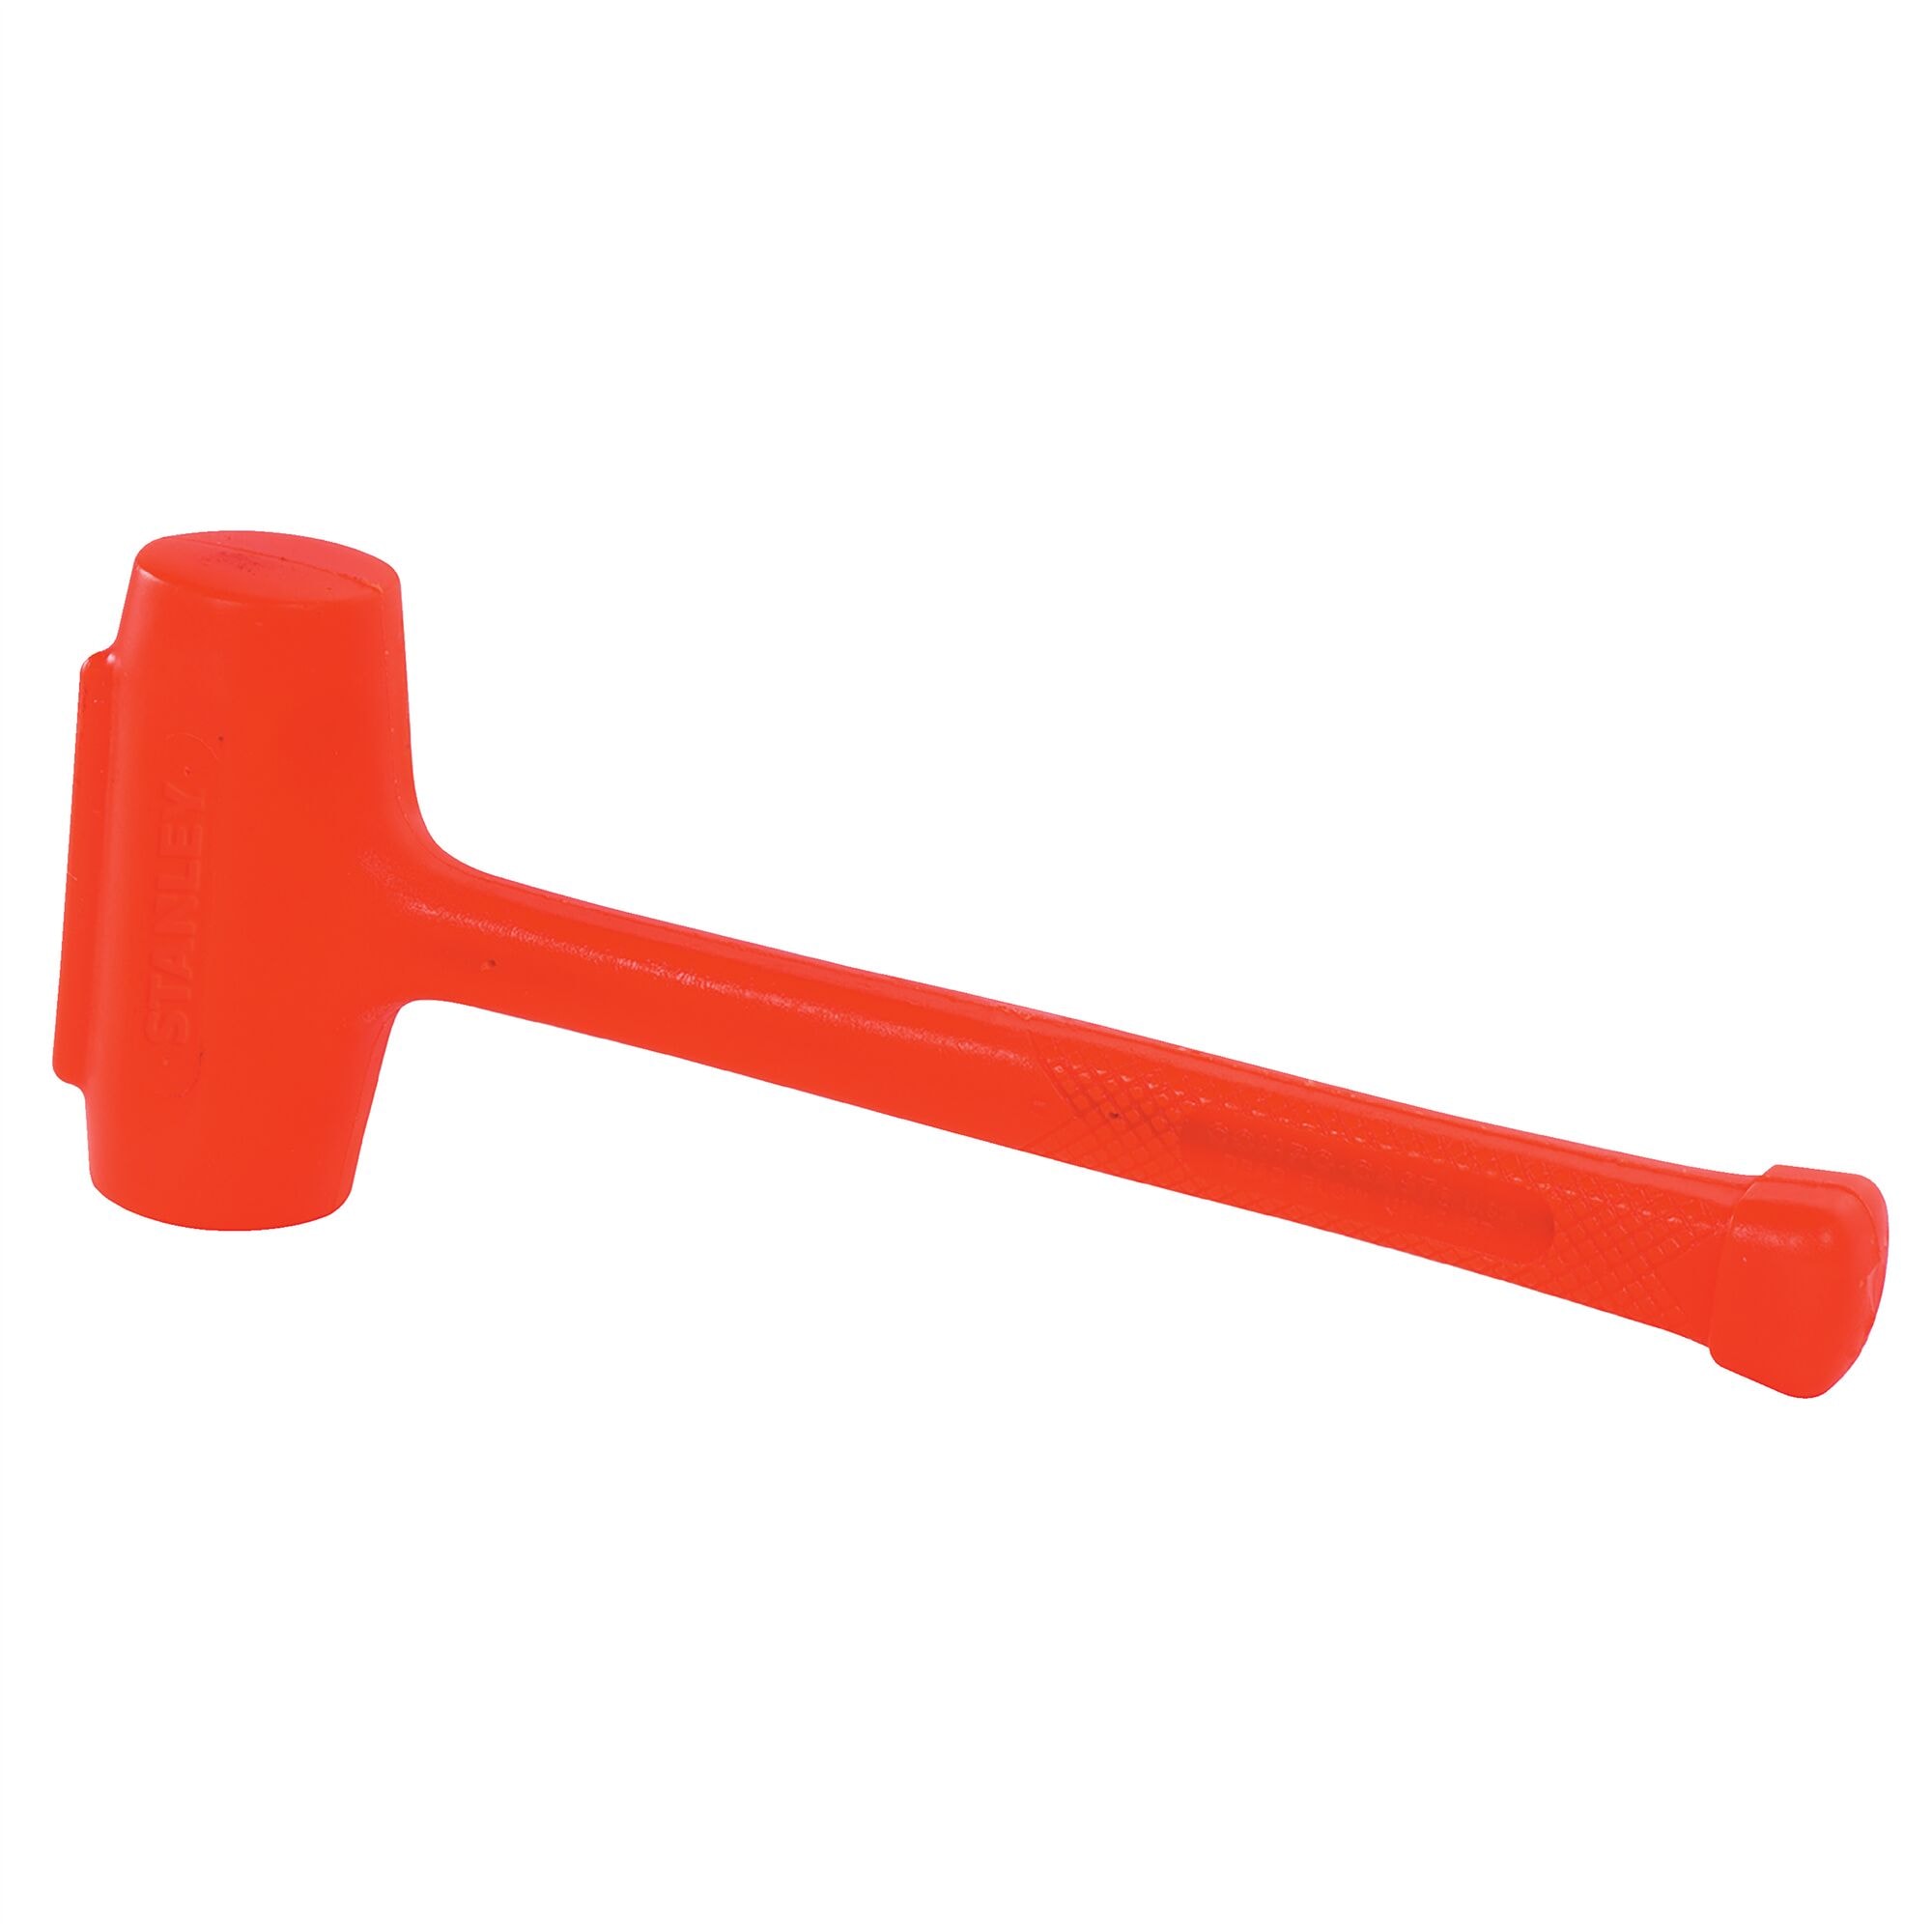 5lb/2.27kg Compocast Sledge Hammer (498mm Length) | STANLEY